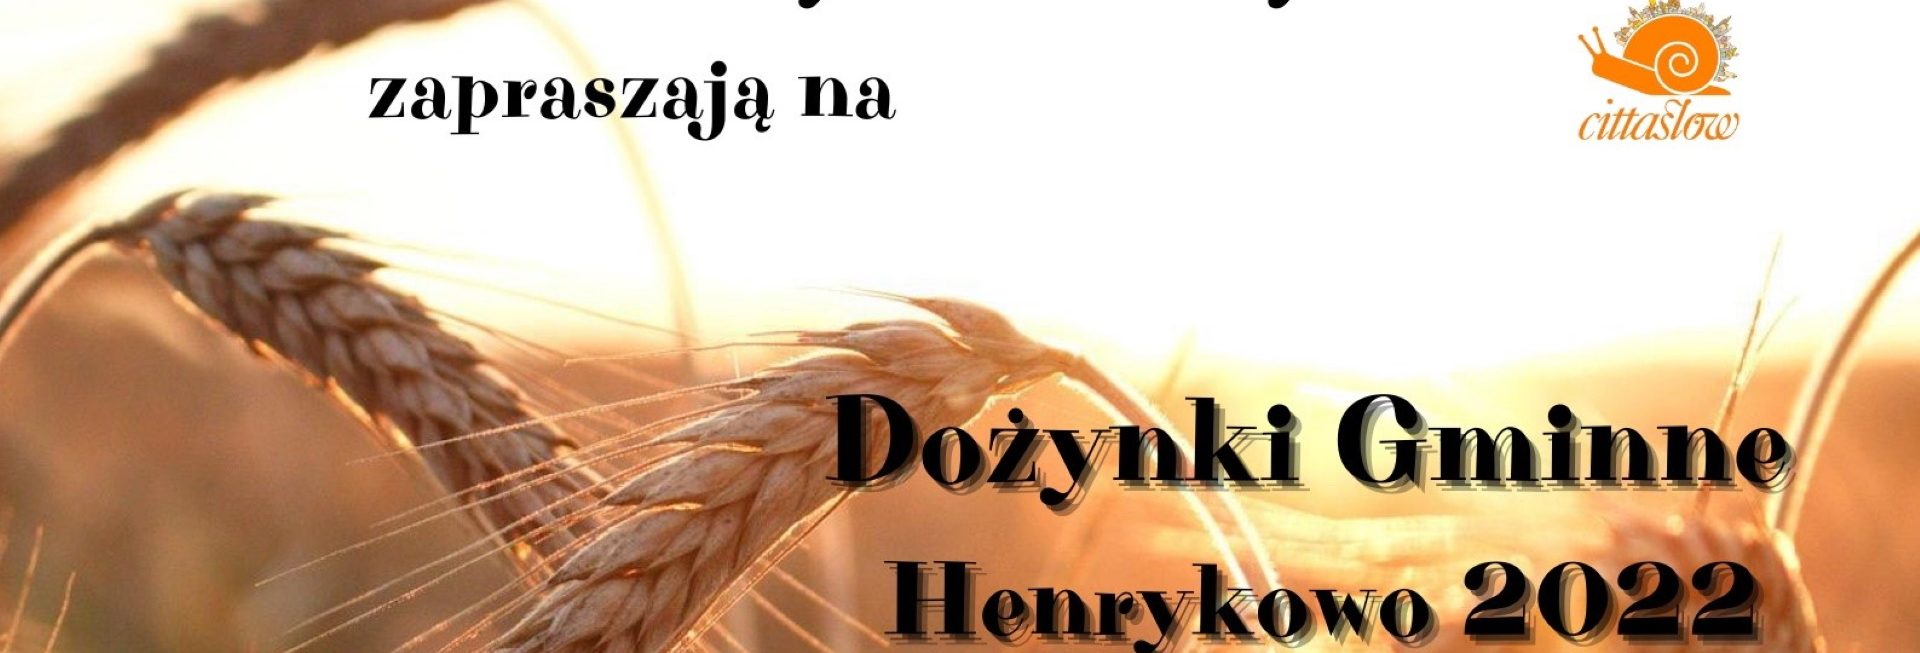 Plakat zapraszający do miejscowości Henrykowo w gminie Orneta na Dożynki Gminne Henrykowo 2022.  